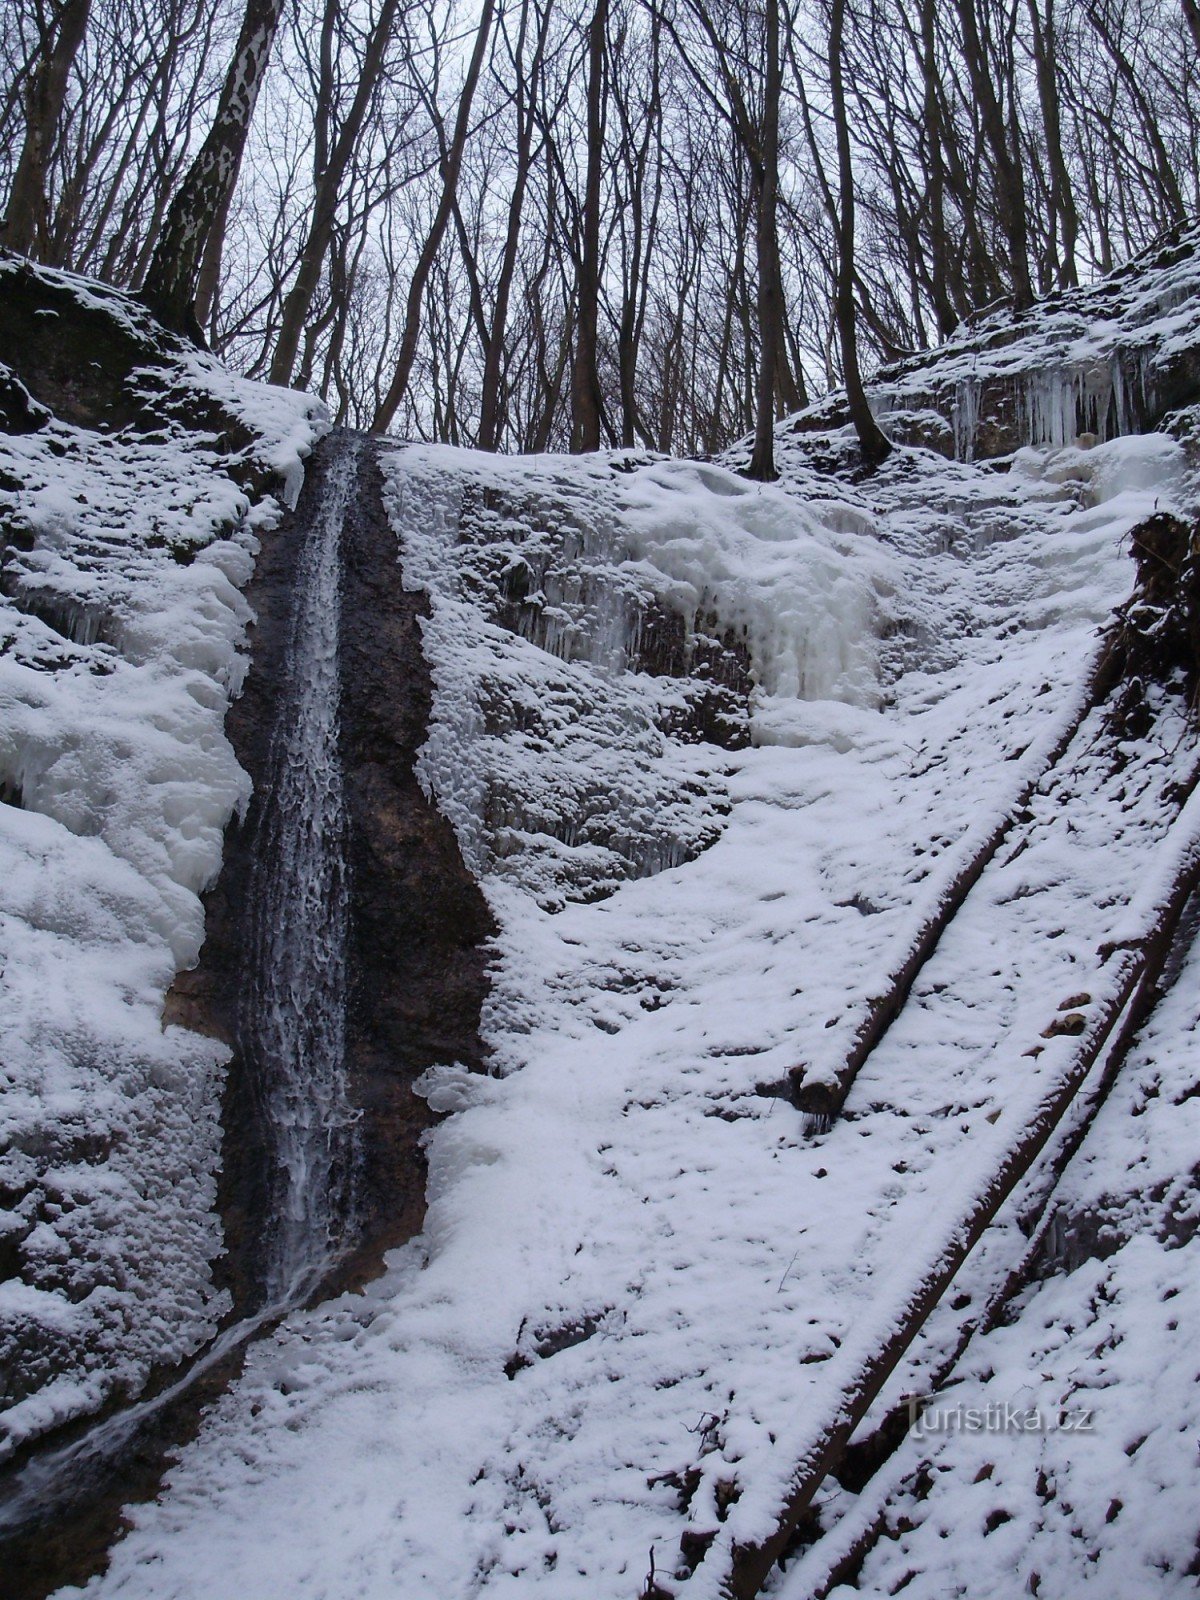 Moravskokrumlov Waterfall2